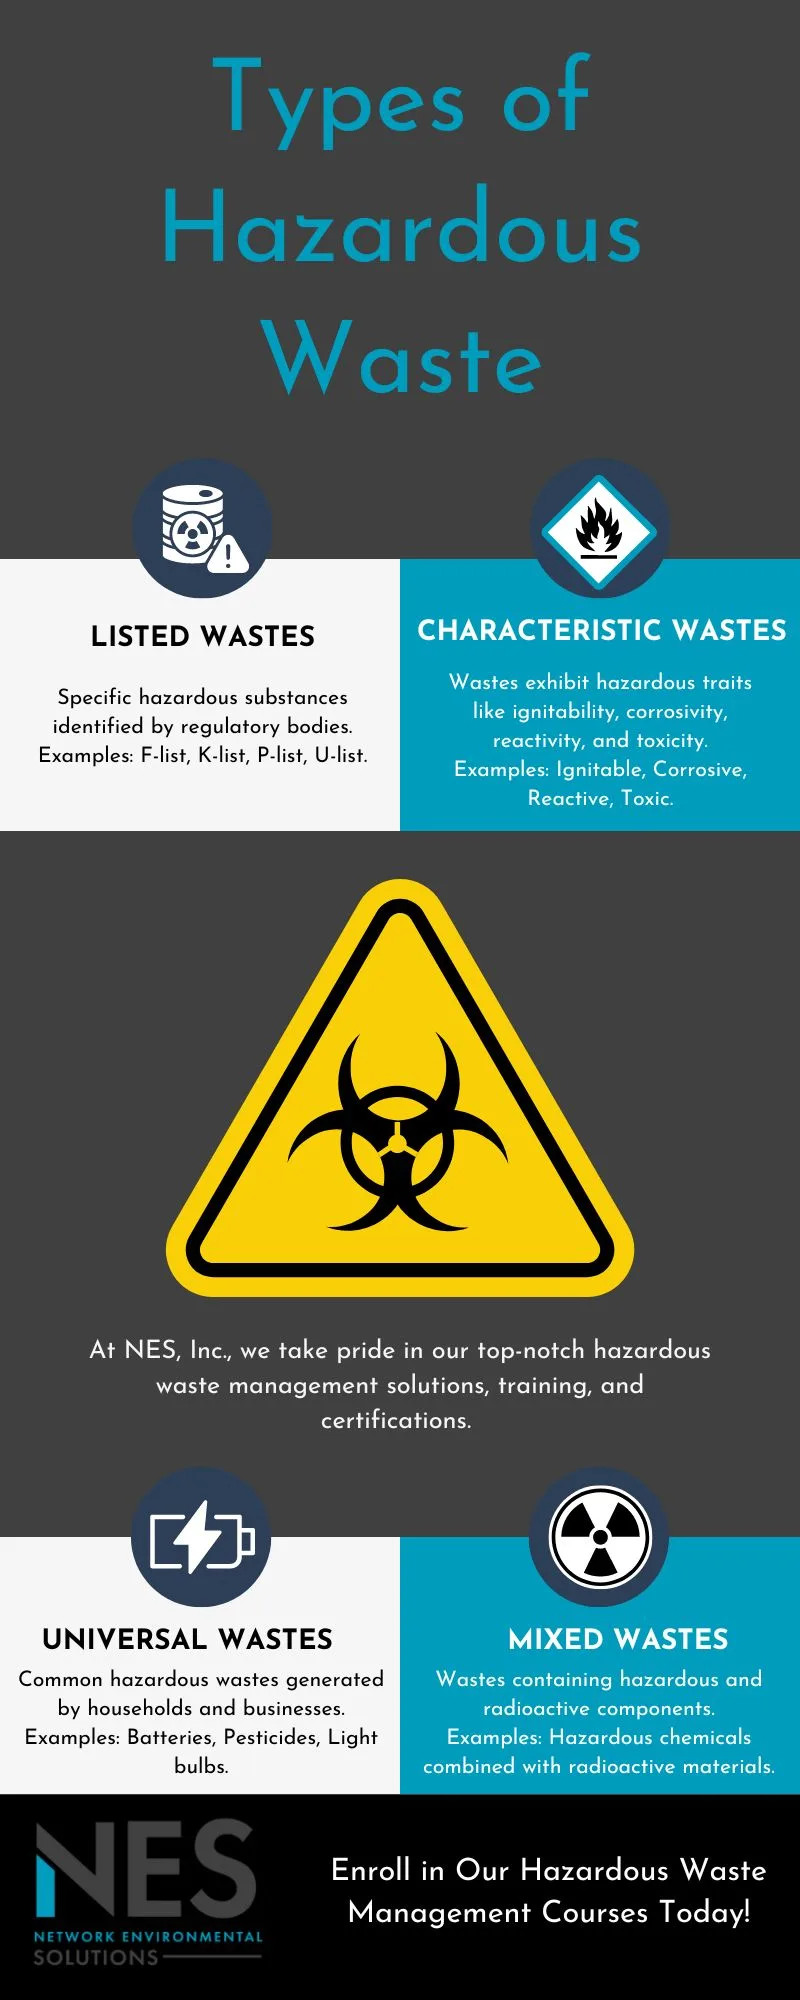 Types of hazardous waste IG